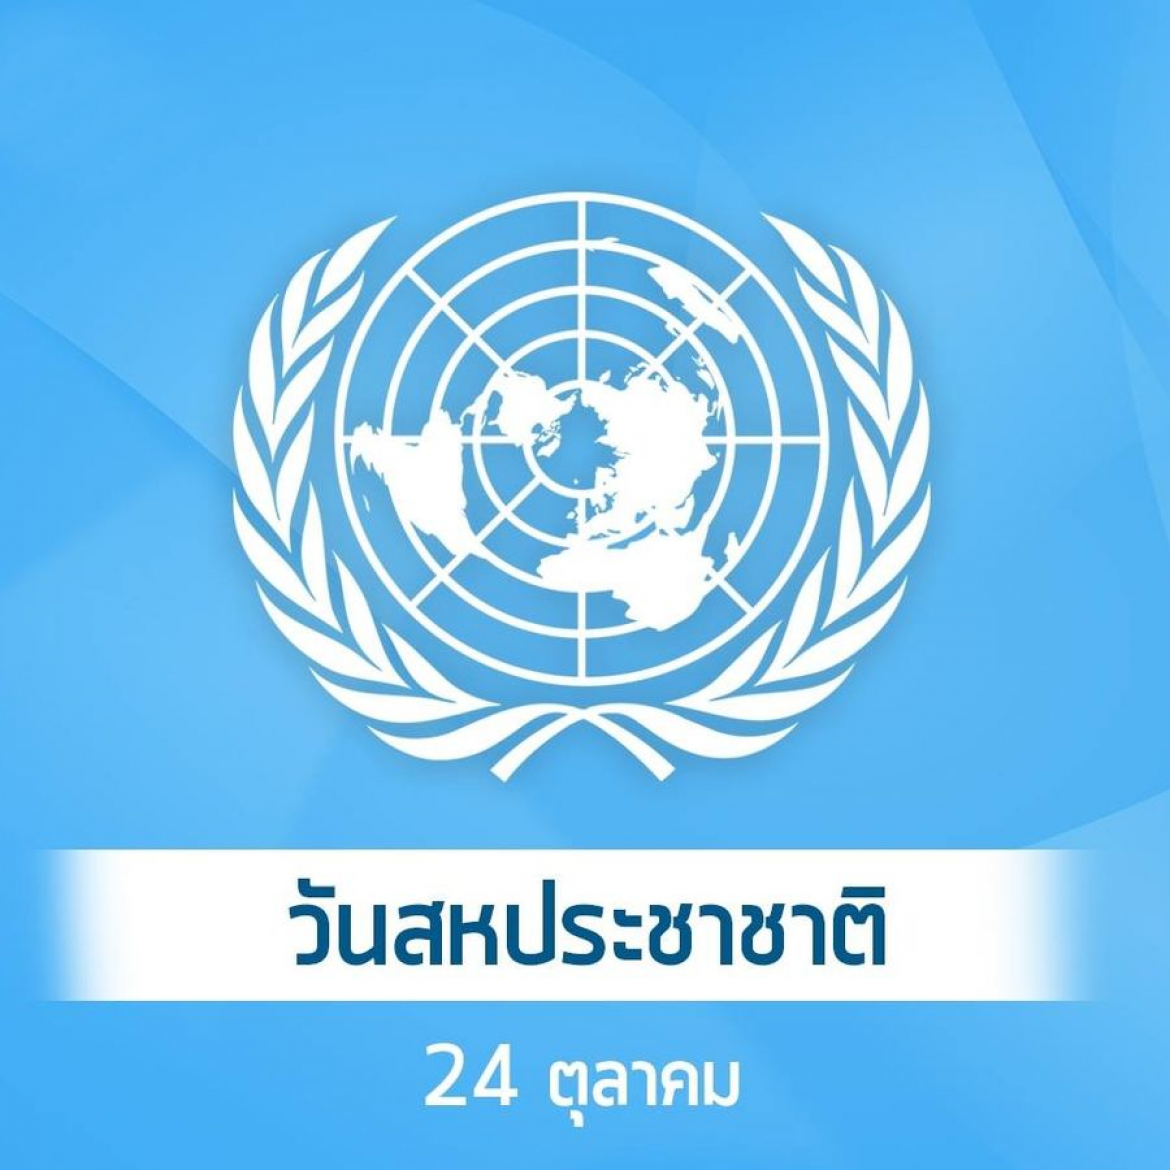 วันสหประชาชาติ (United Nations Day)